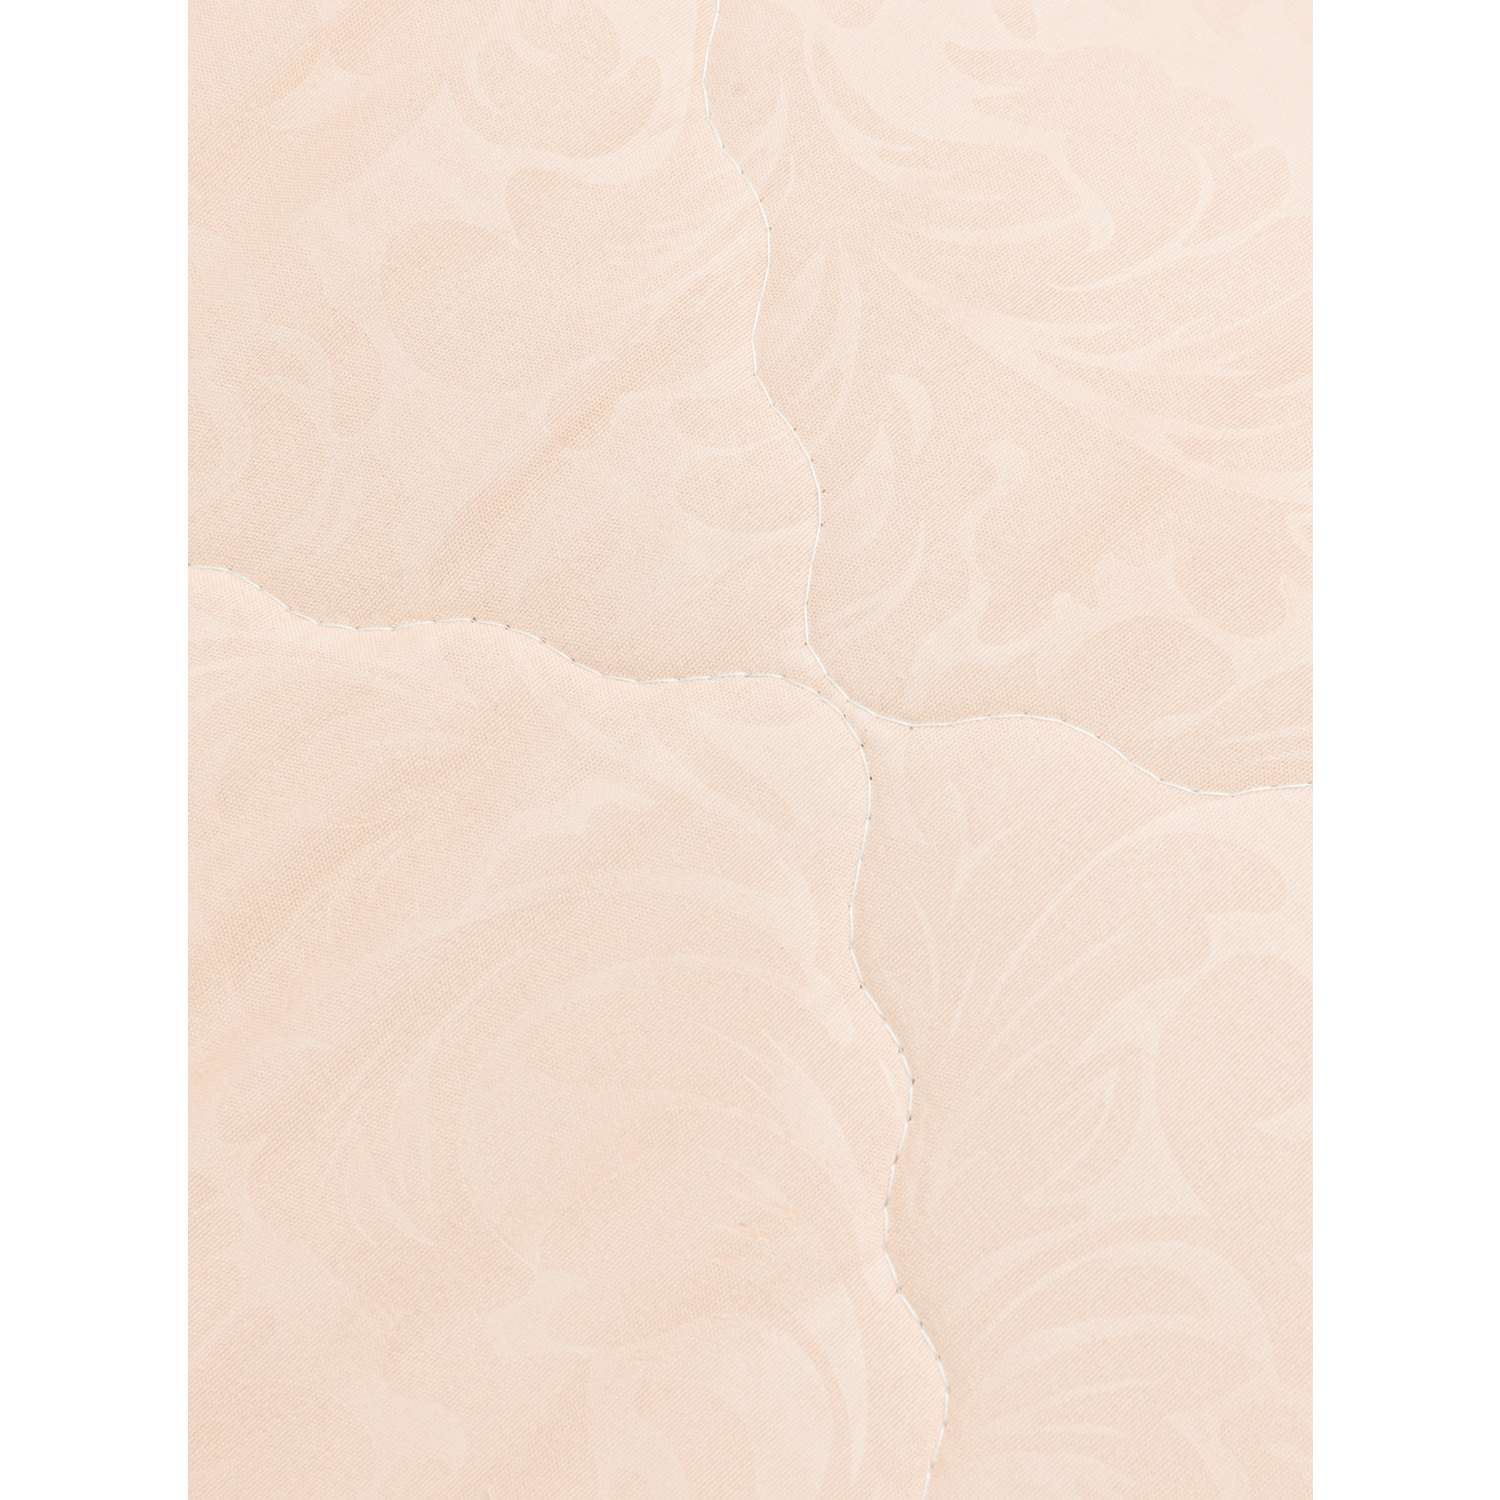 Одеяло 1.5 спальное Vesta Микрофибра всесезонное - фото 3